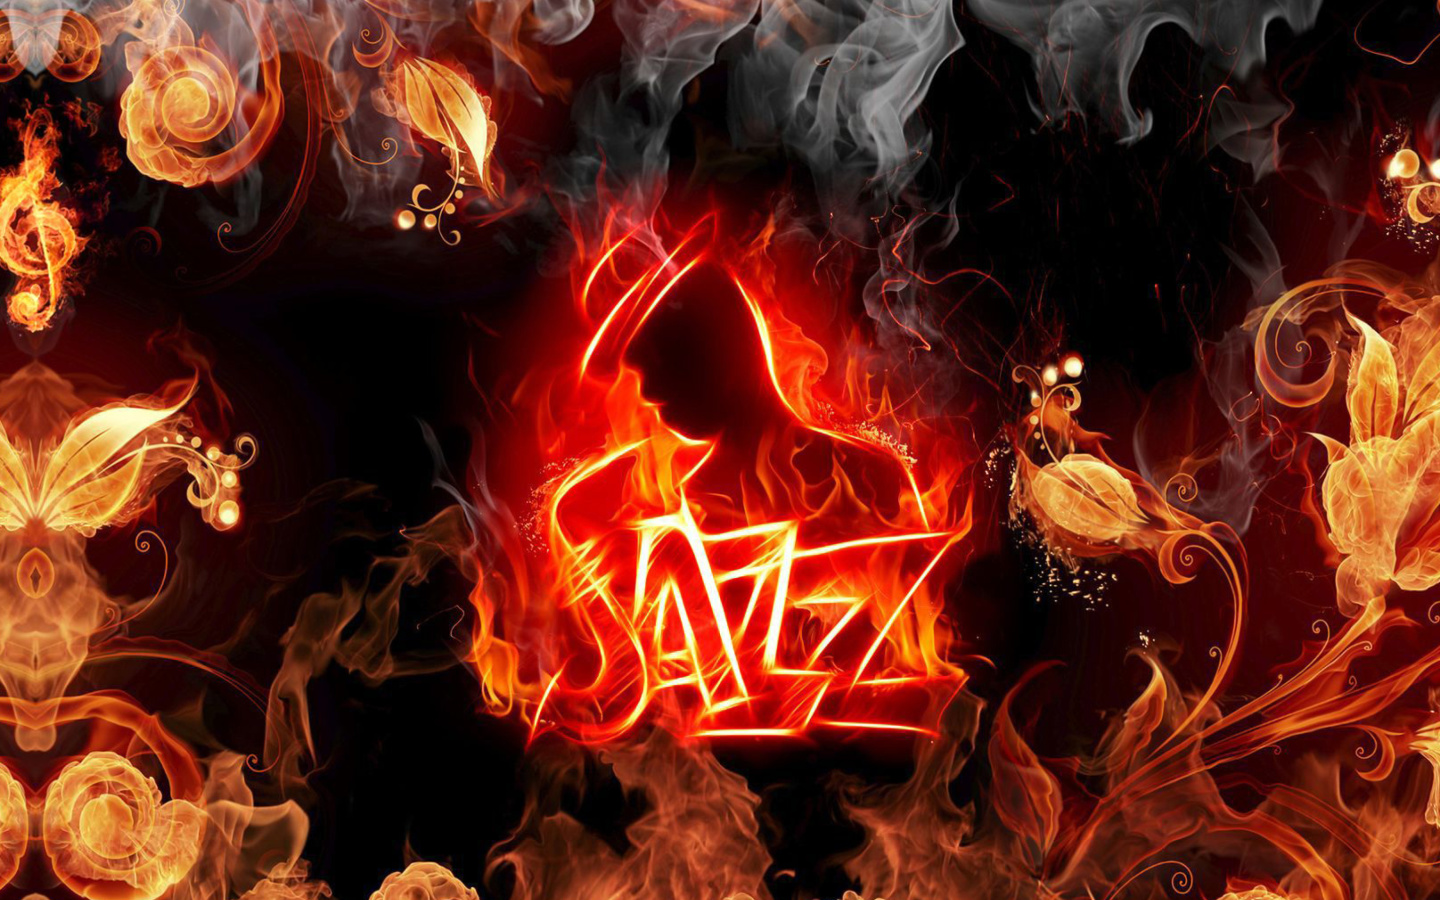 Das Jazz Fire HD Wallpaper 1440x900